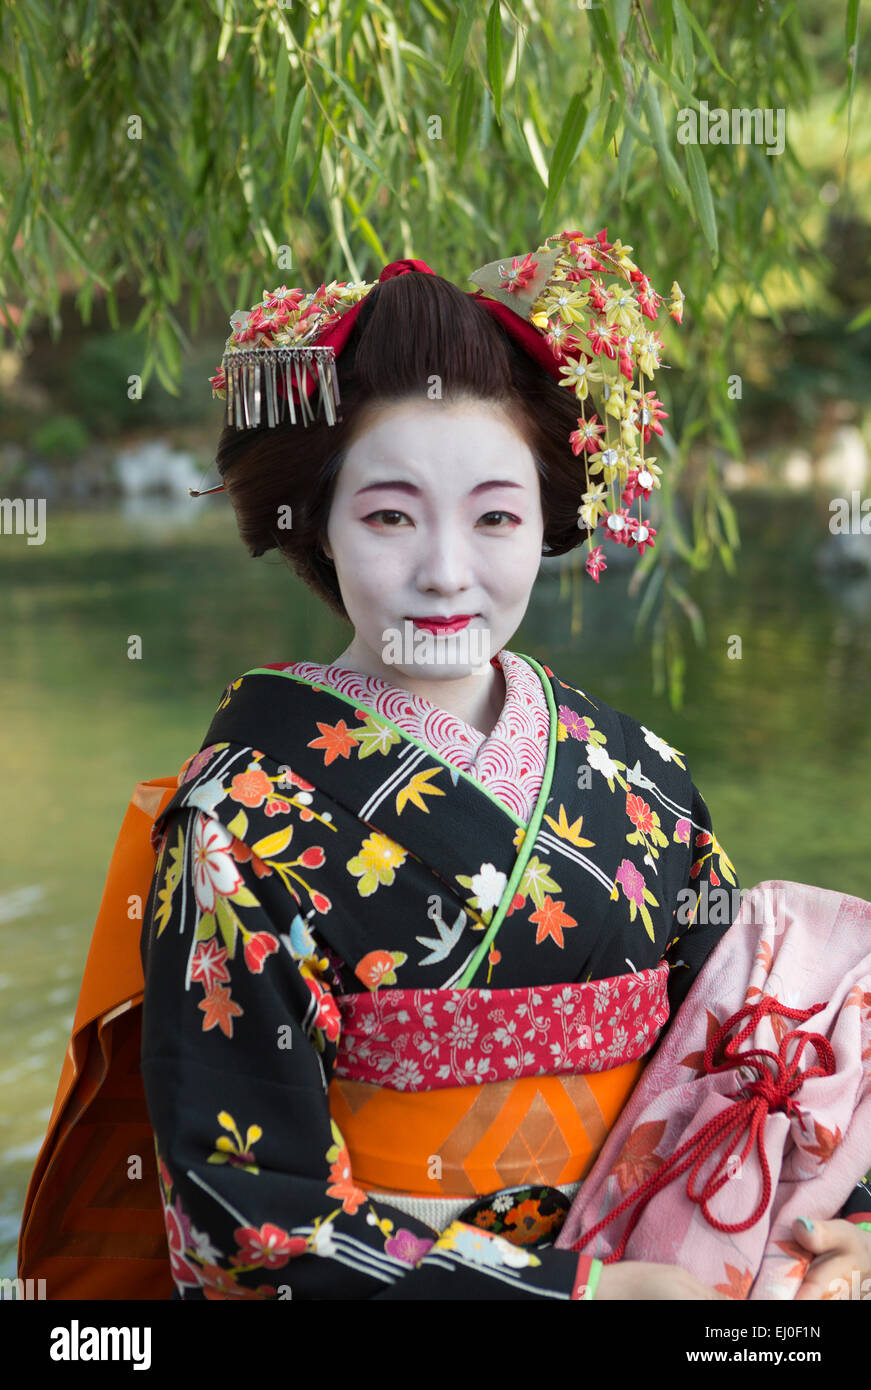 Individuum, Japan, Asien, Kyoto, Outdoor, bunt, Kostüm, Geisha, keine Modellfreigabe, Mädchen, Japan, Kimono, Schmink, Tradition Stockfoto